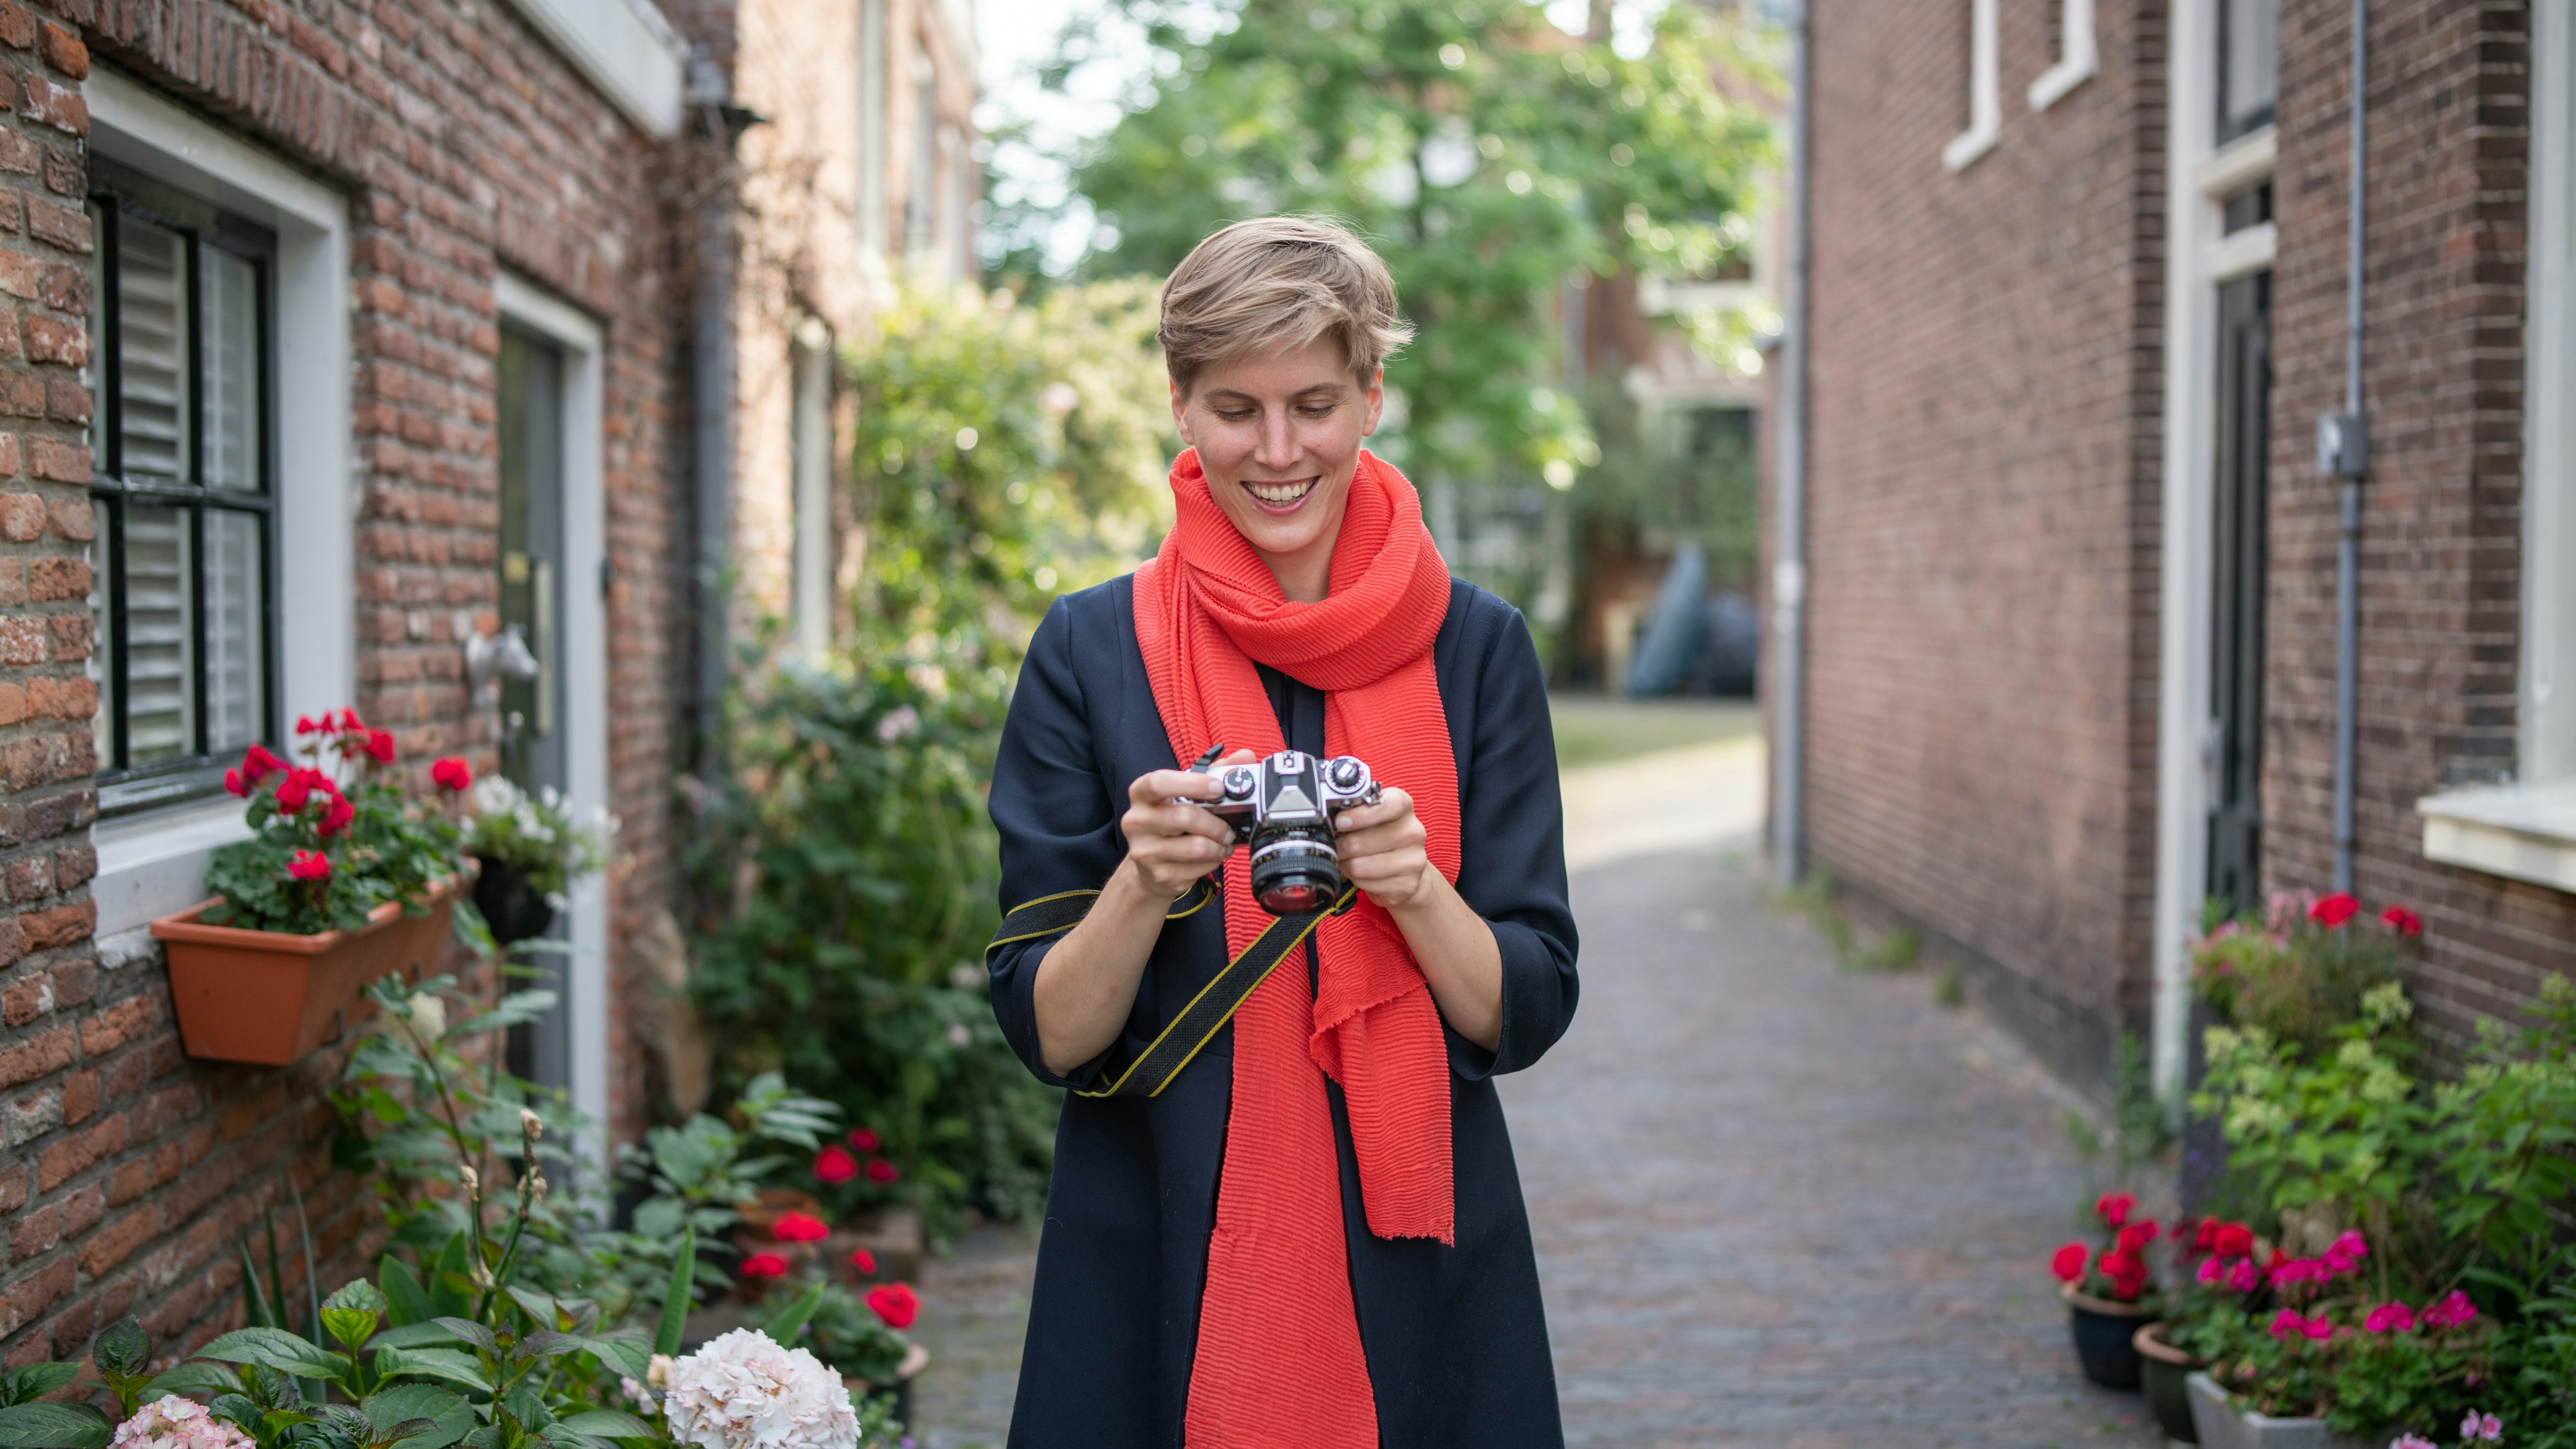 Annegret Bönemann, die einen leuchtend roten Schal trägt, blickt auf eine analoge Kamera, die in den Straßen einer alten Stadt steht.